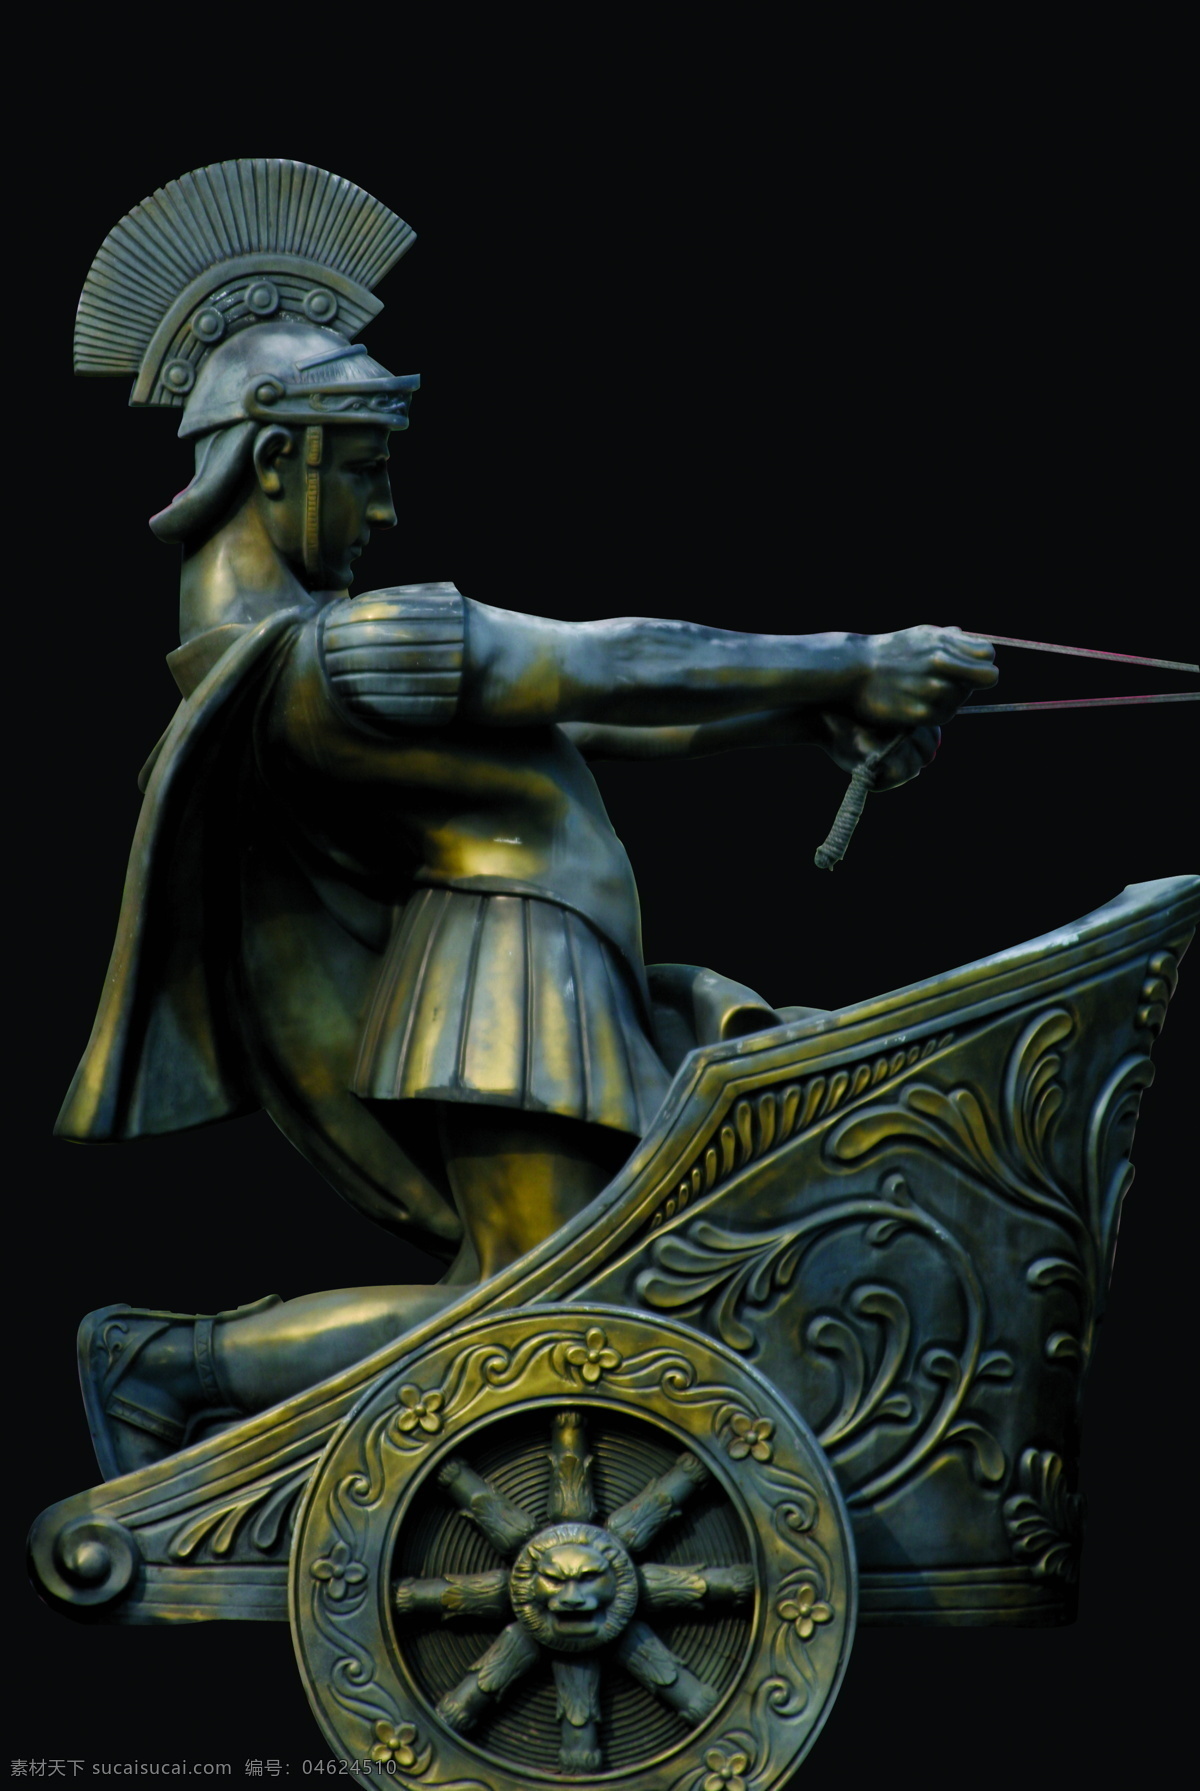 罗马 士兵 罗马士兵 战车 园林青铜雕塑 家居装饰素材 园林景观设计